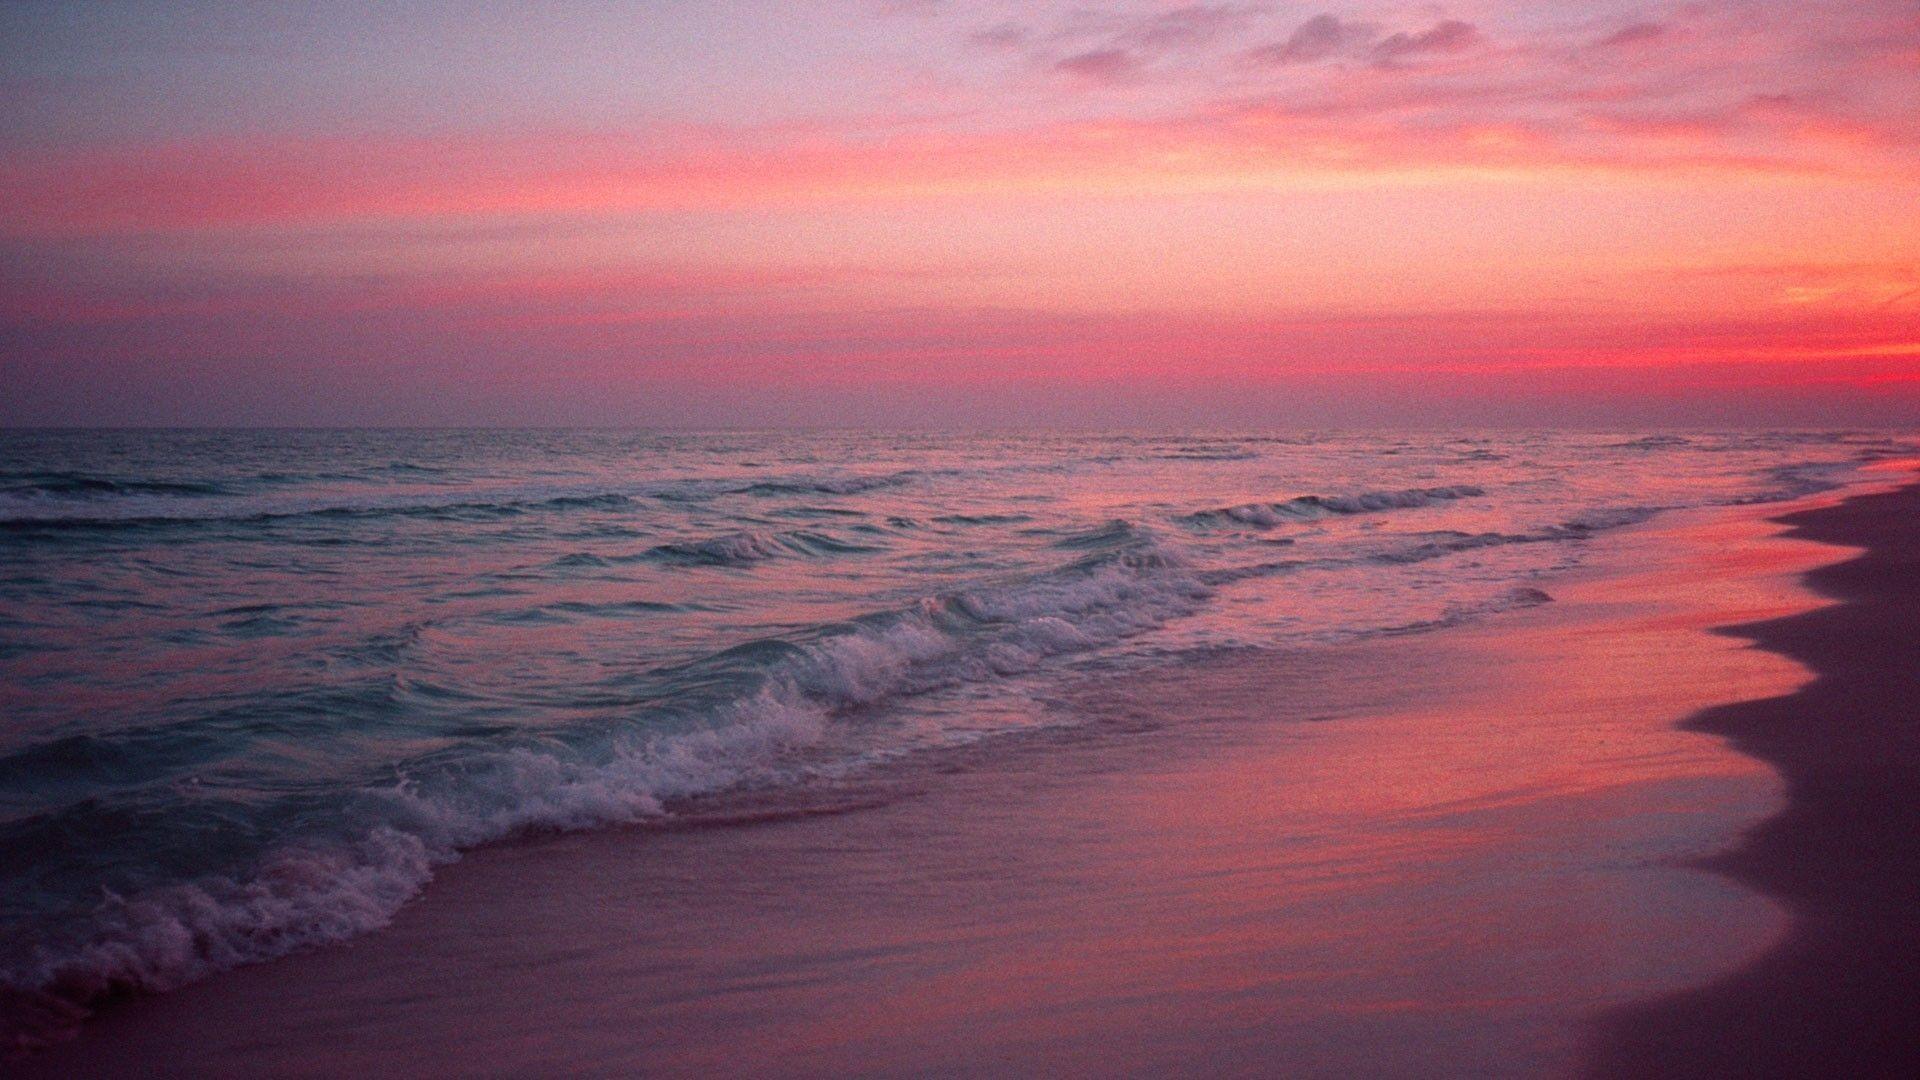 Aesthetic Beach Sunset Wallpaper